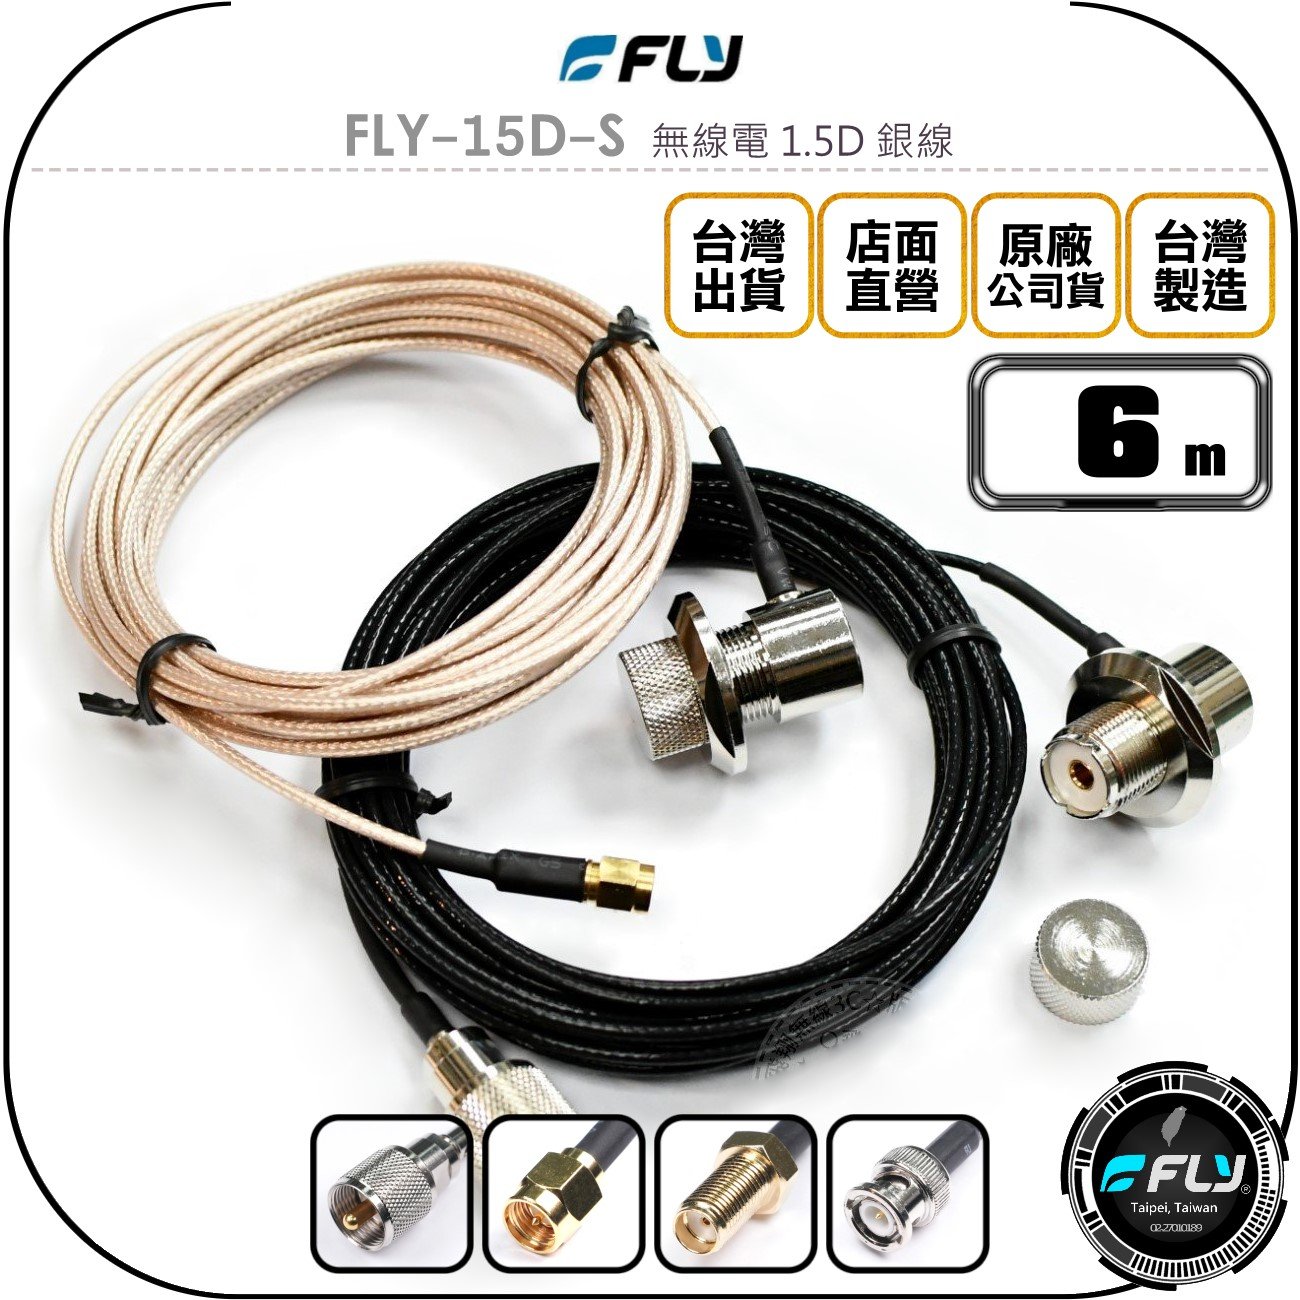 《飛翔無線3C》FLY FLY-15D-S 無線電 1.5D 銀線 6m◉公司貨◉訊號線◉對講機收發◉車機外接傳輸